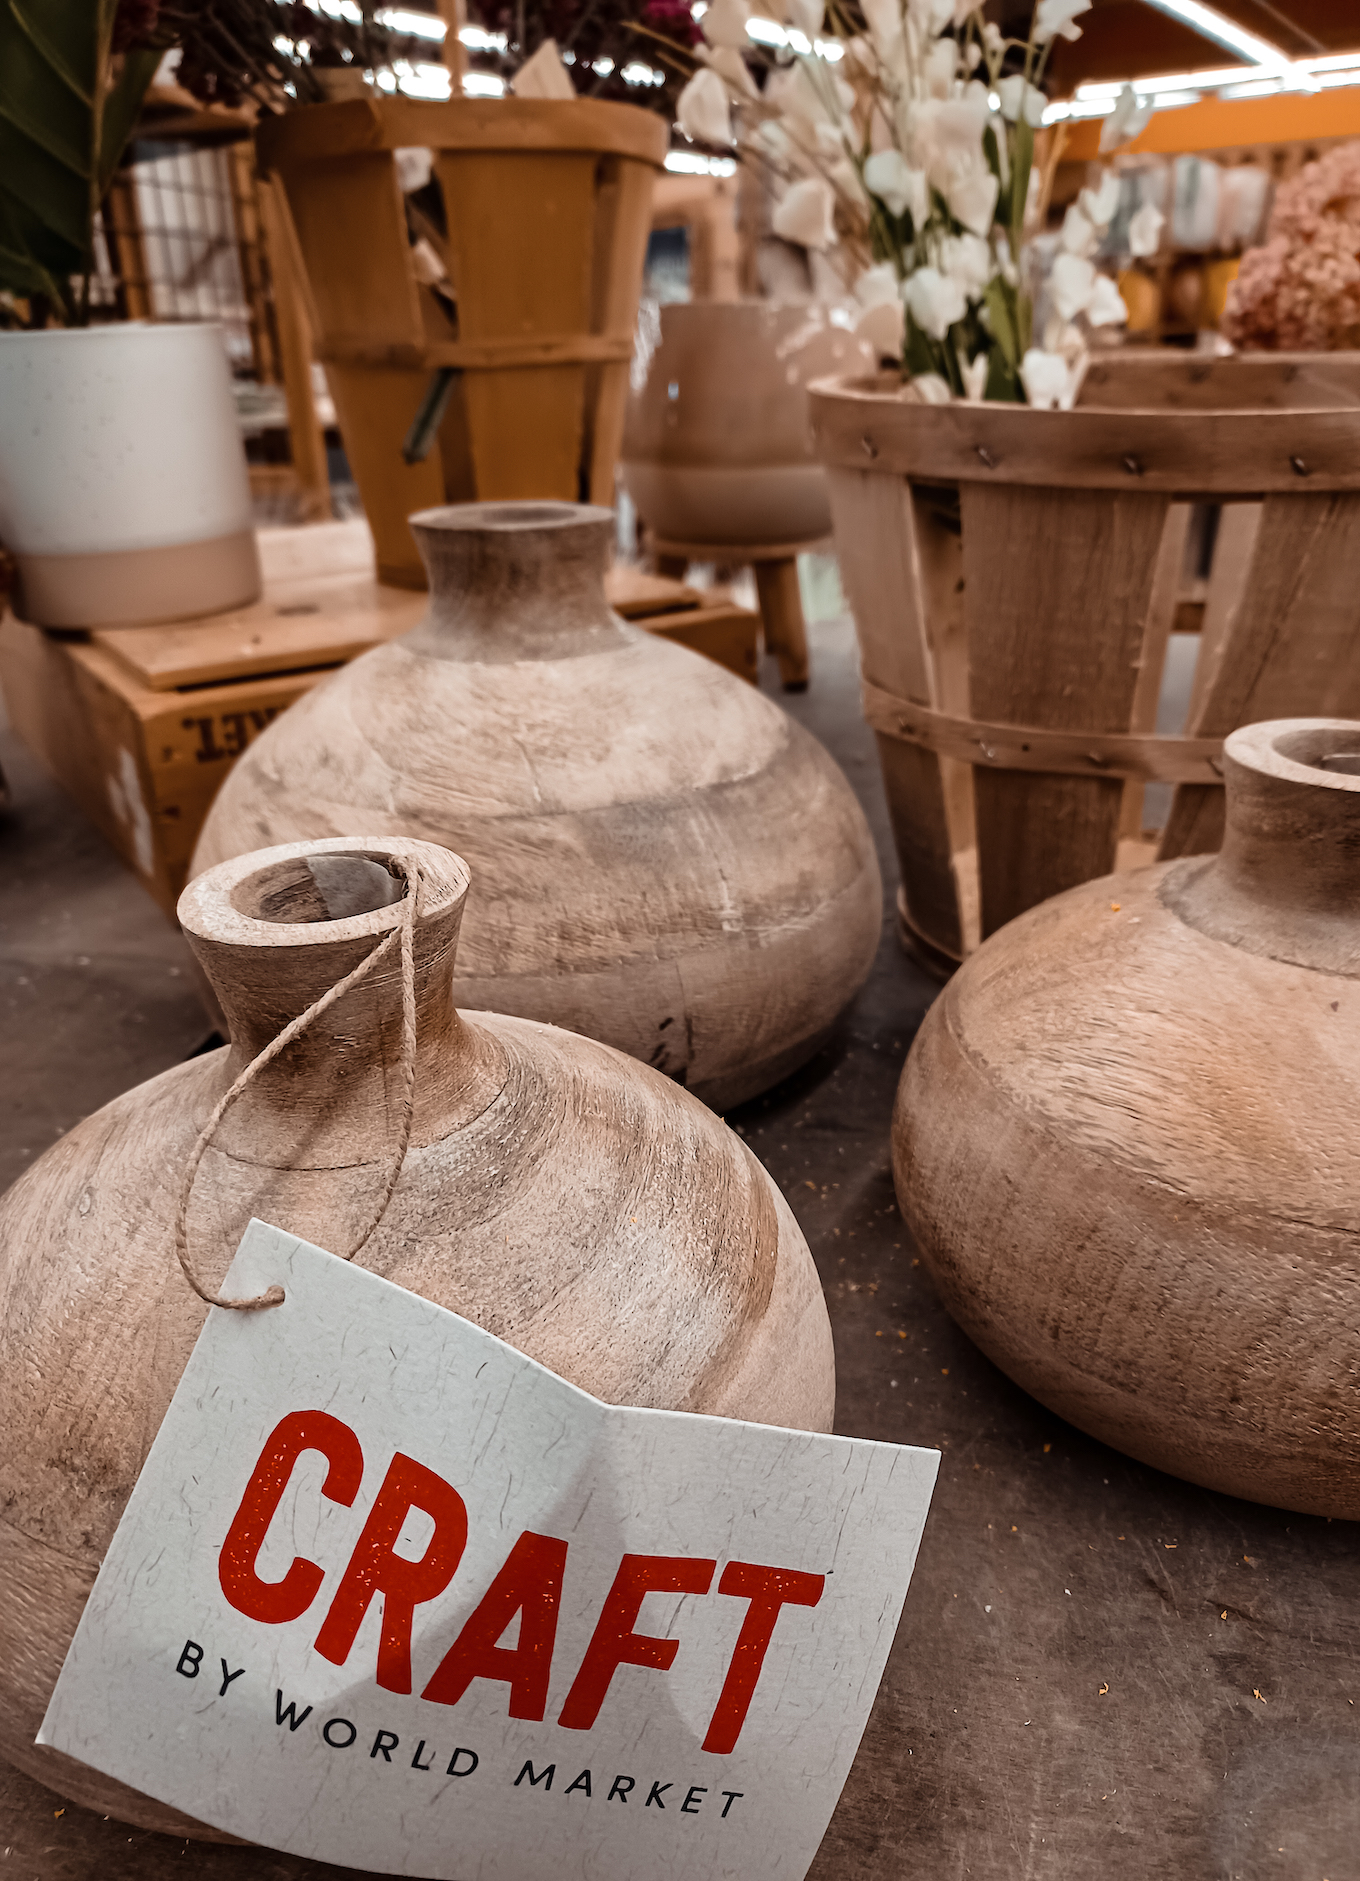 World Market ceramic jug vases